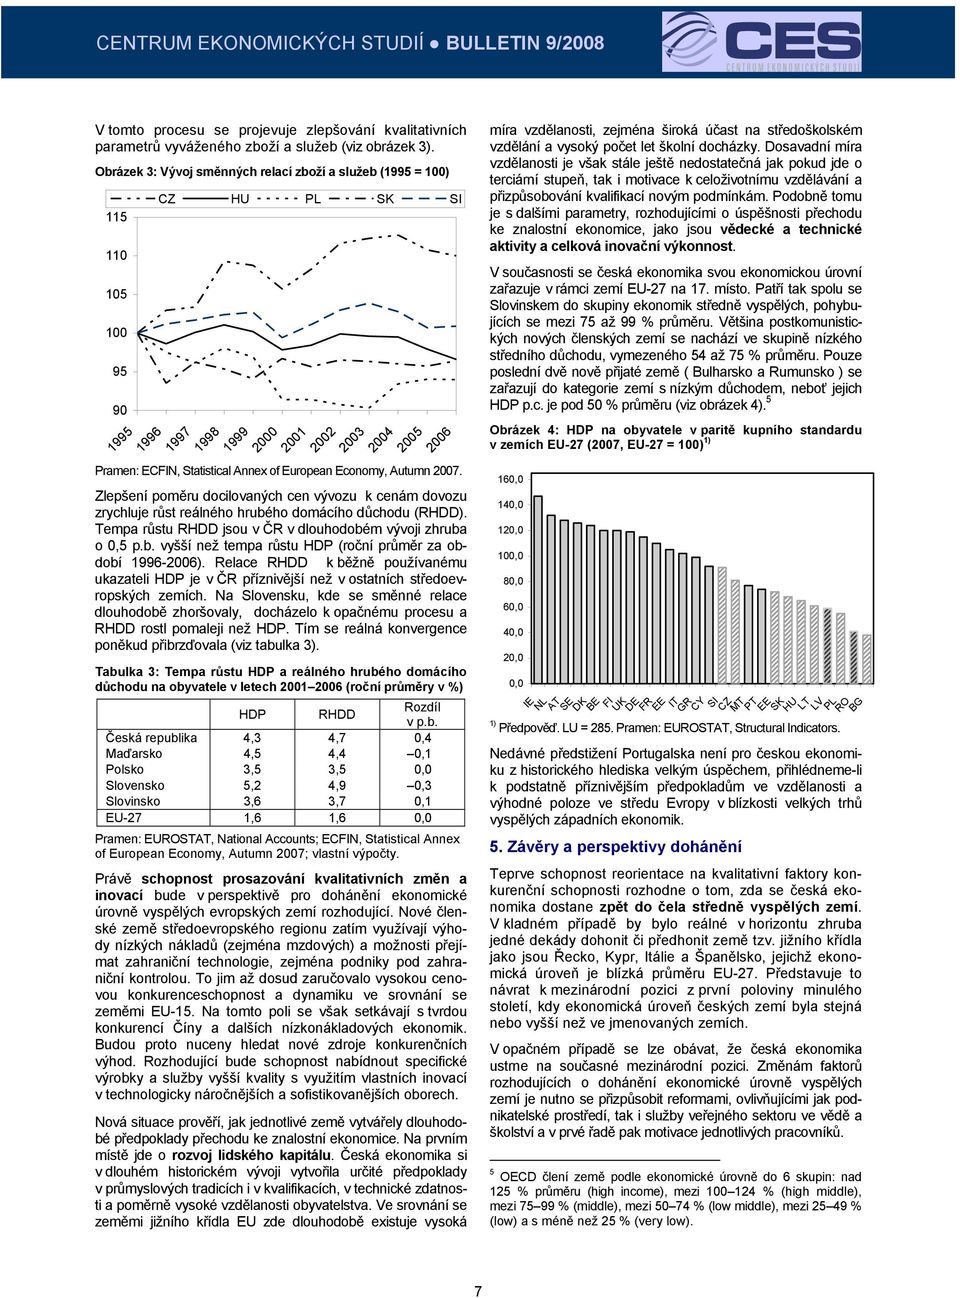 European Economy, Autumn 2007. Zlepšení poměru docilovaných cen vývozu k cenám dovozu zrychluje růst reálného hrubého domácího důchodu (RHDD).